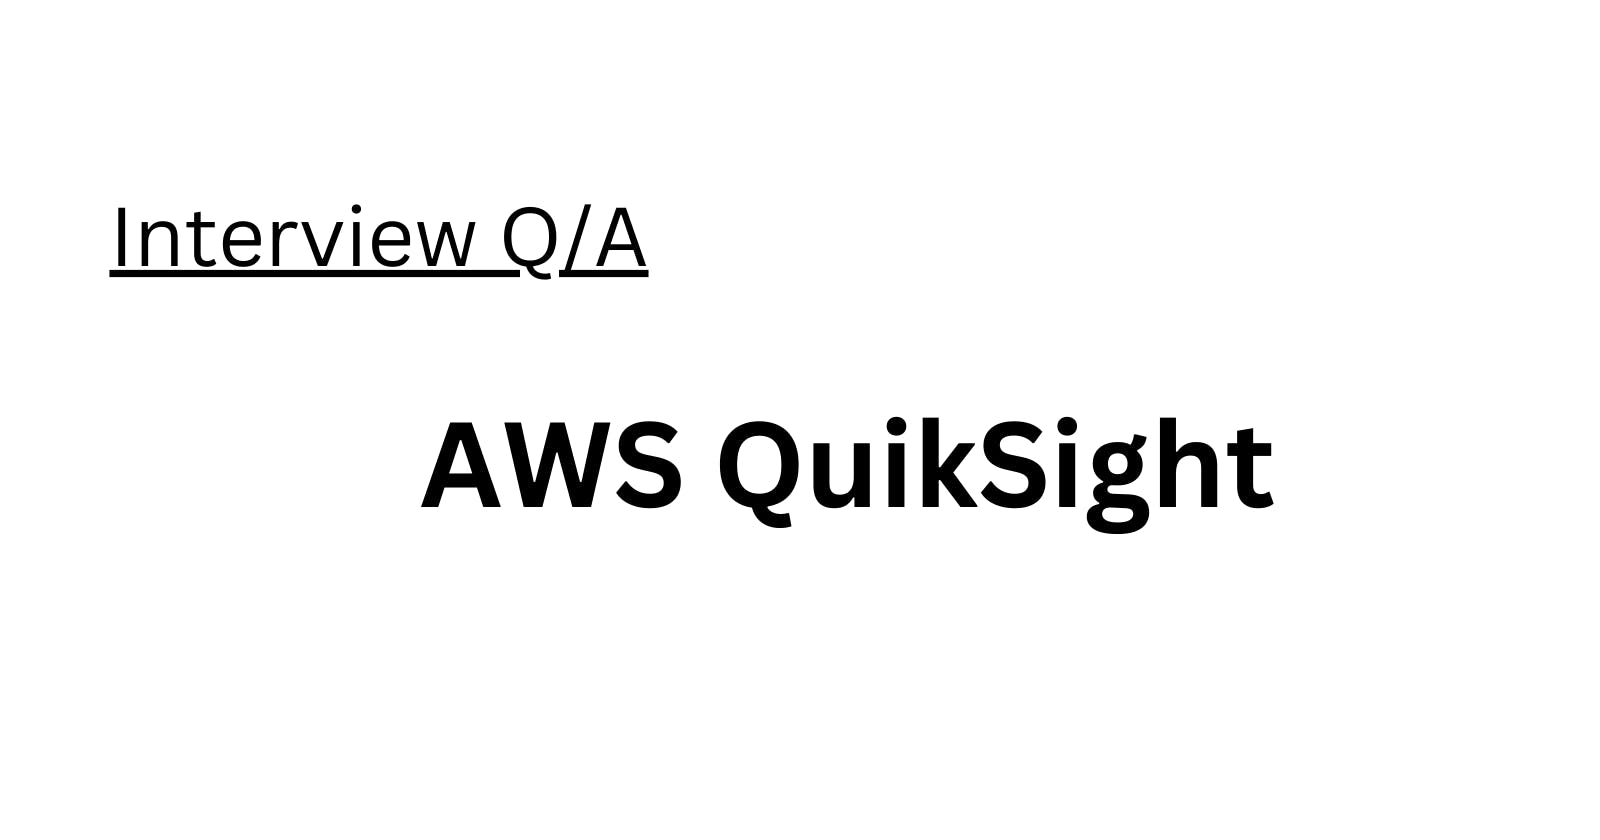 AWS QuikSight Interview Q/A